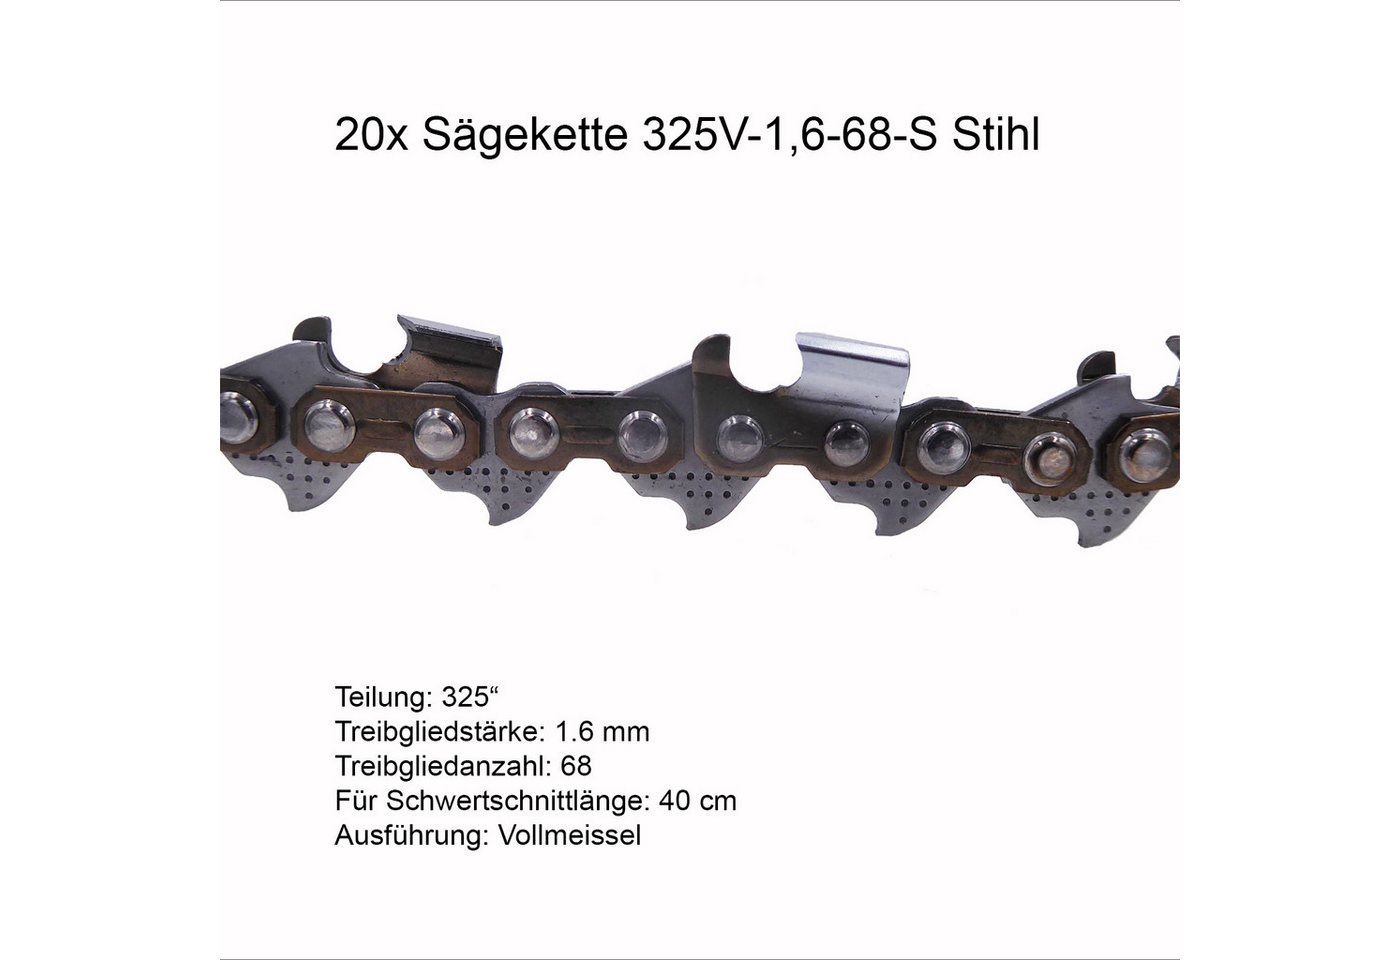 Fritz Krug Ersatzkette 20 Stück Stihl RSC Sägekette 325 1.3 mm 68 TG Vollmeissel von Fritz Krug